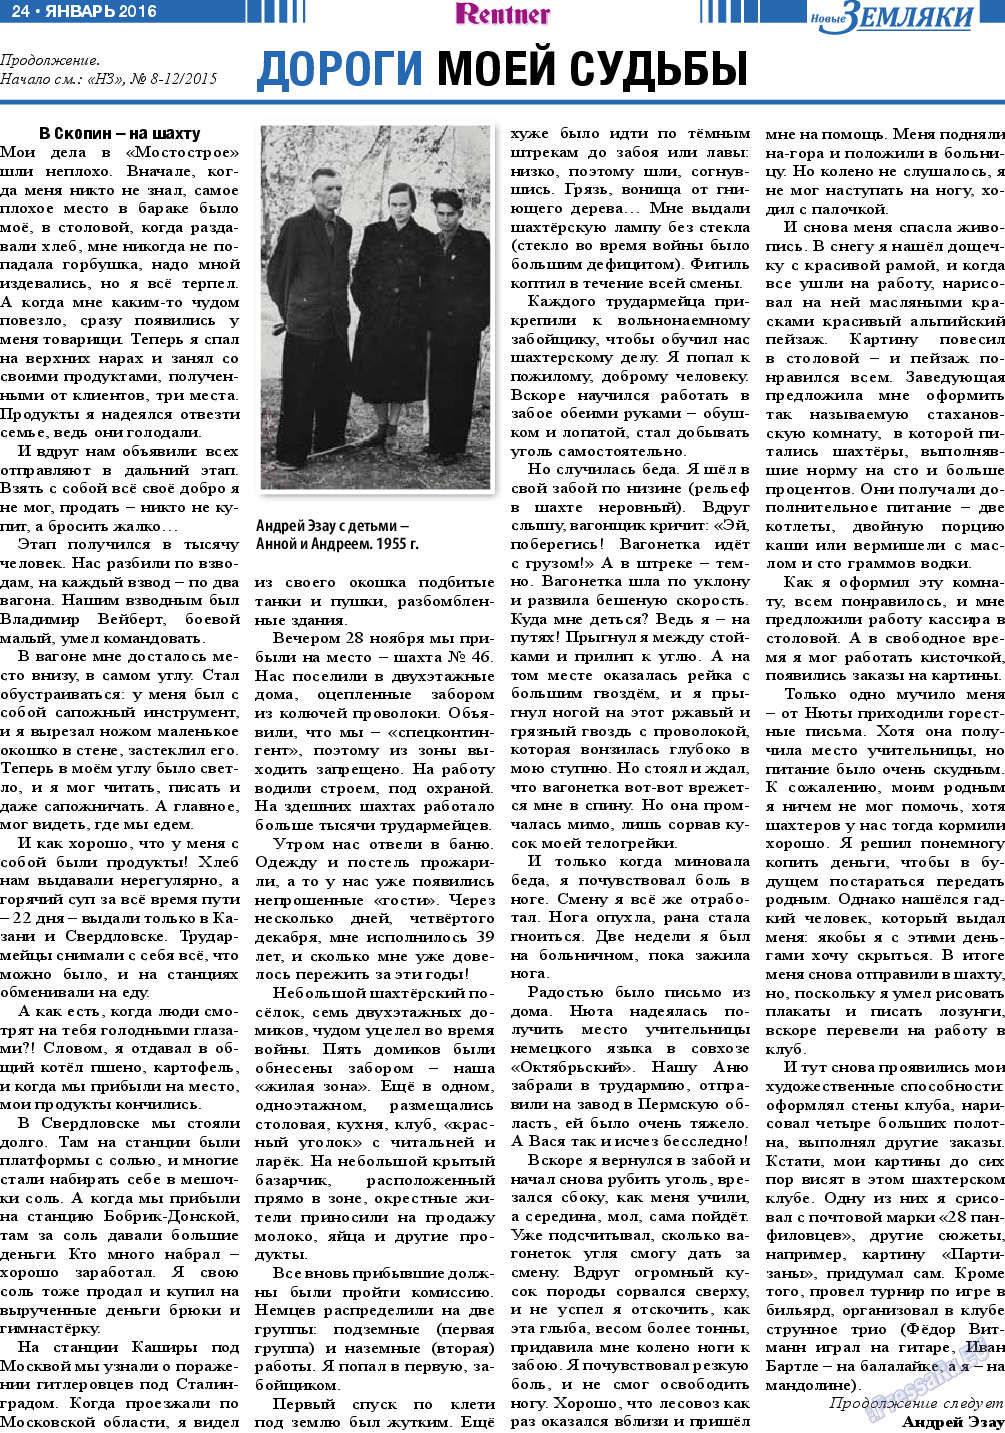 Новые Земляки (газета). 2016 год, номер 1, стр. 24